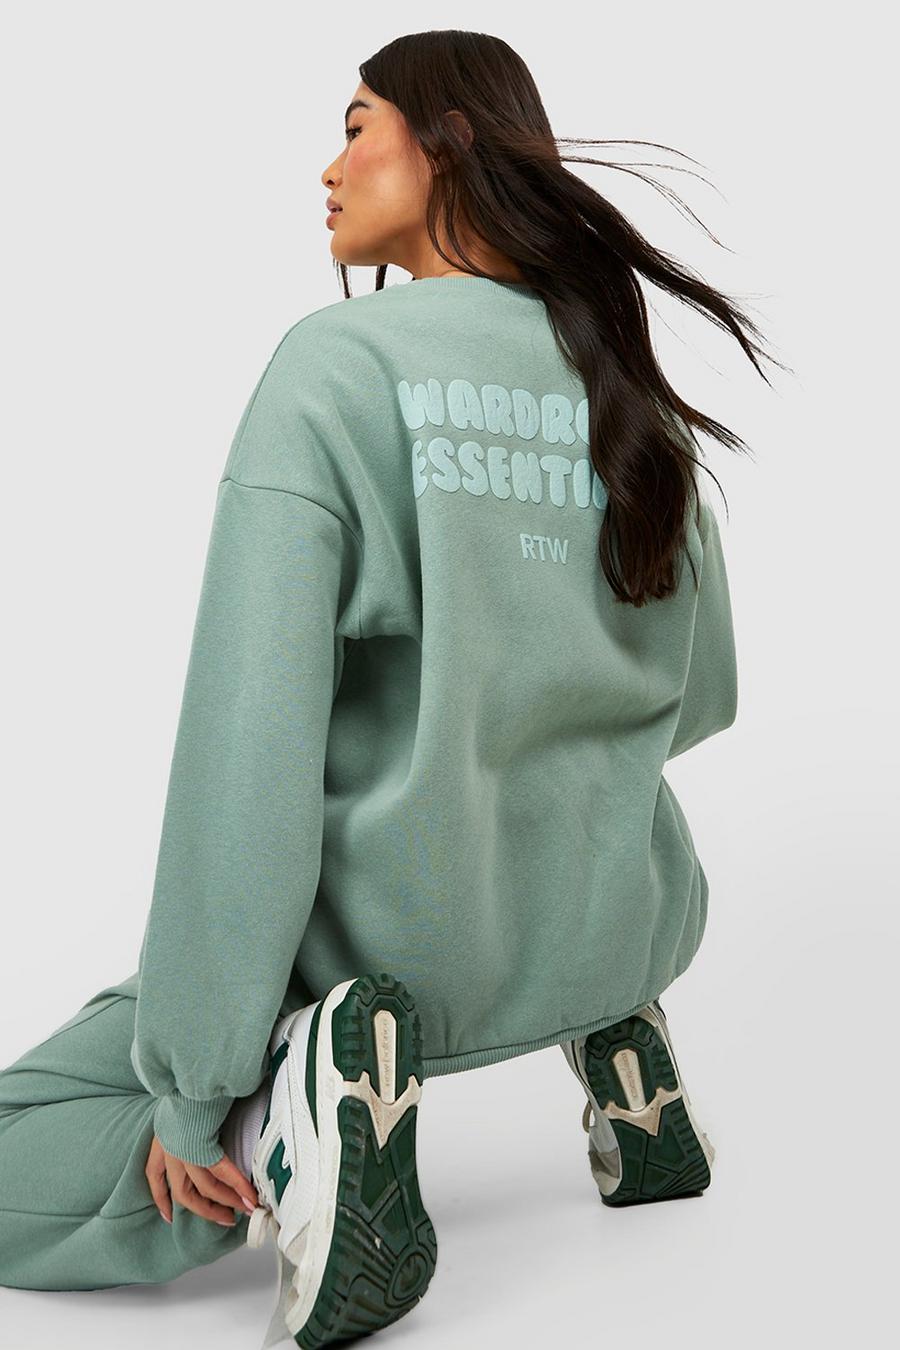 Sweatshirt mit Wardrobe Essentials Slogan, Sage grün